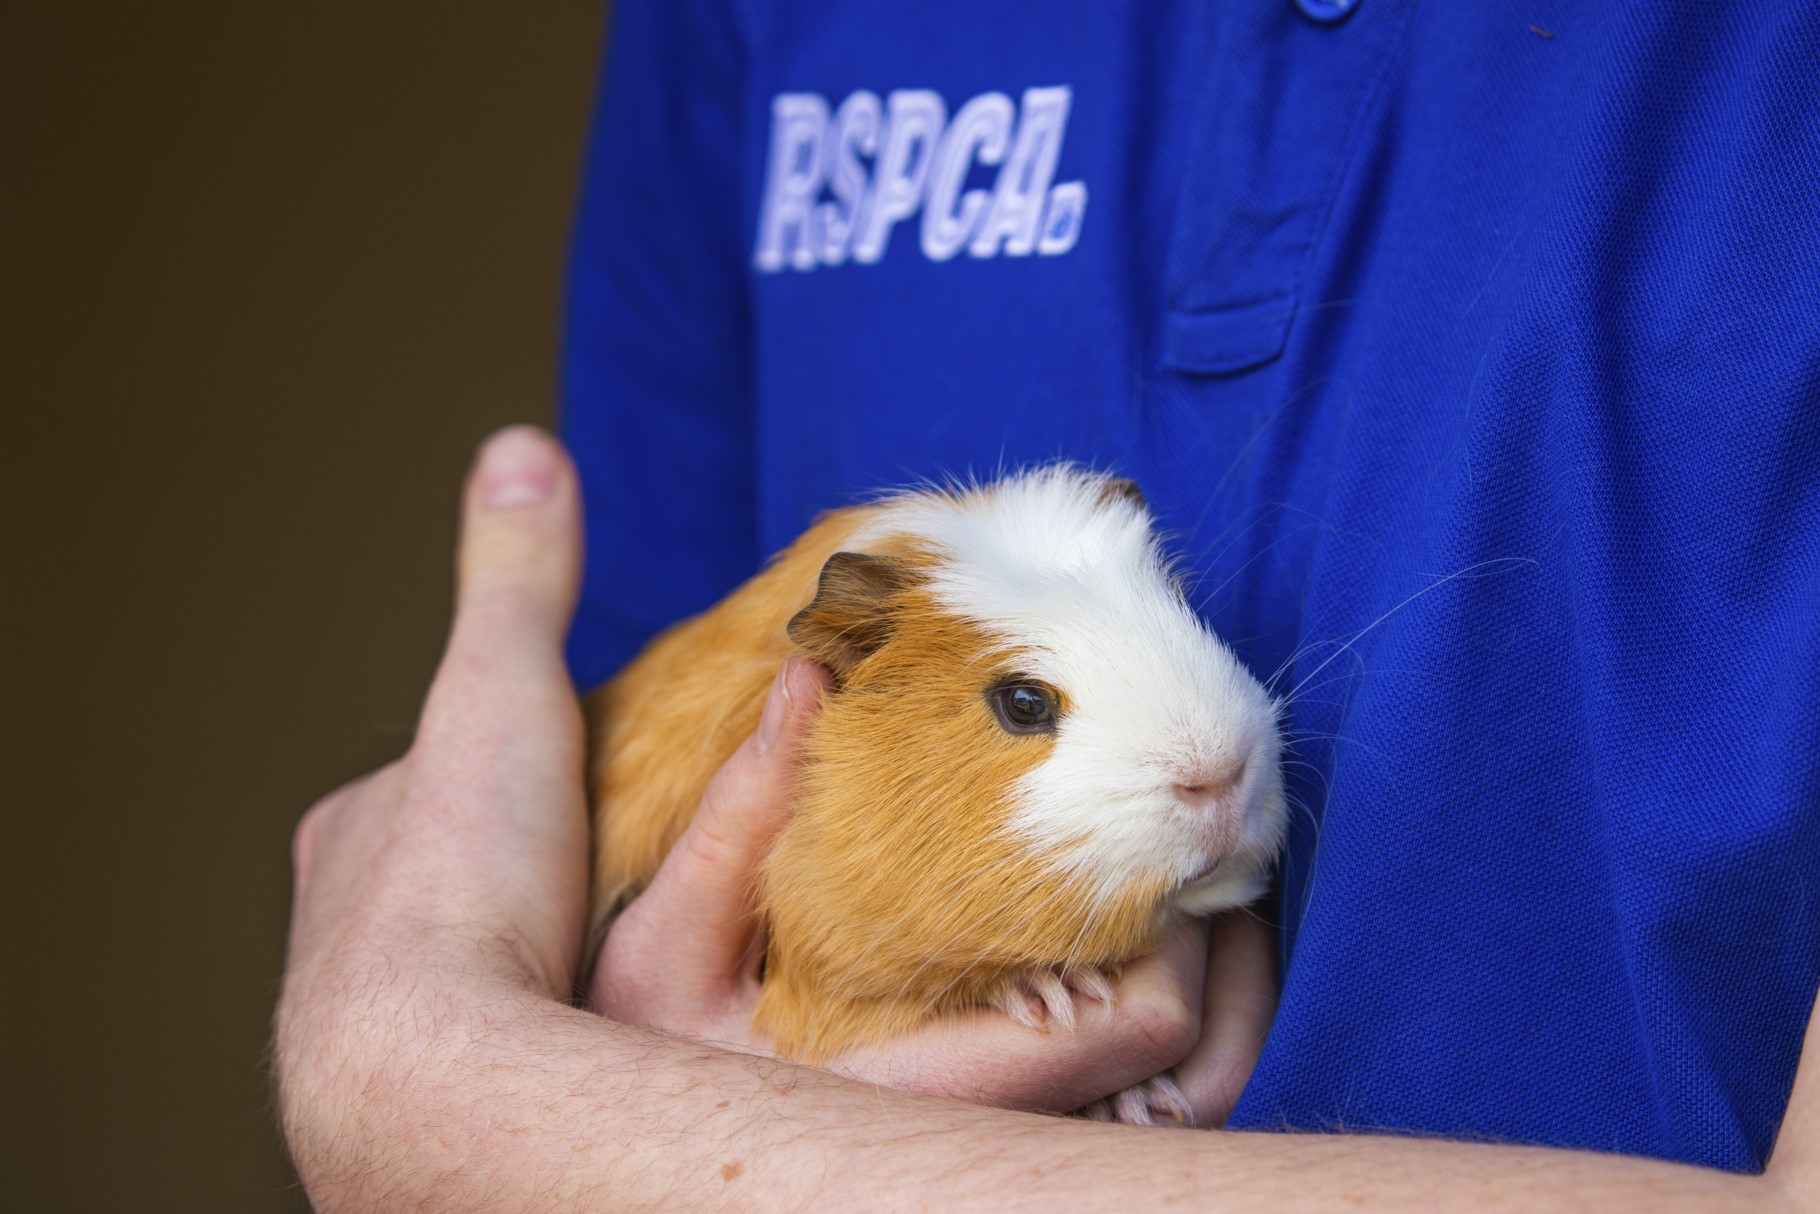 rspca volunteer holding hamster